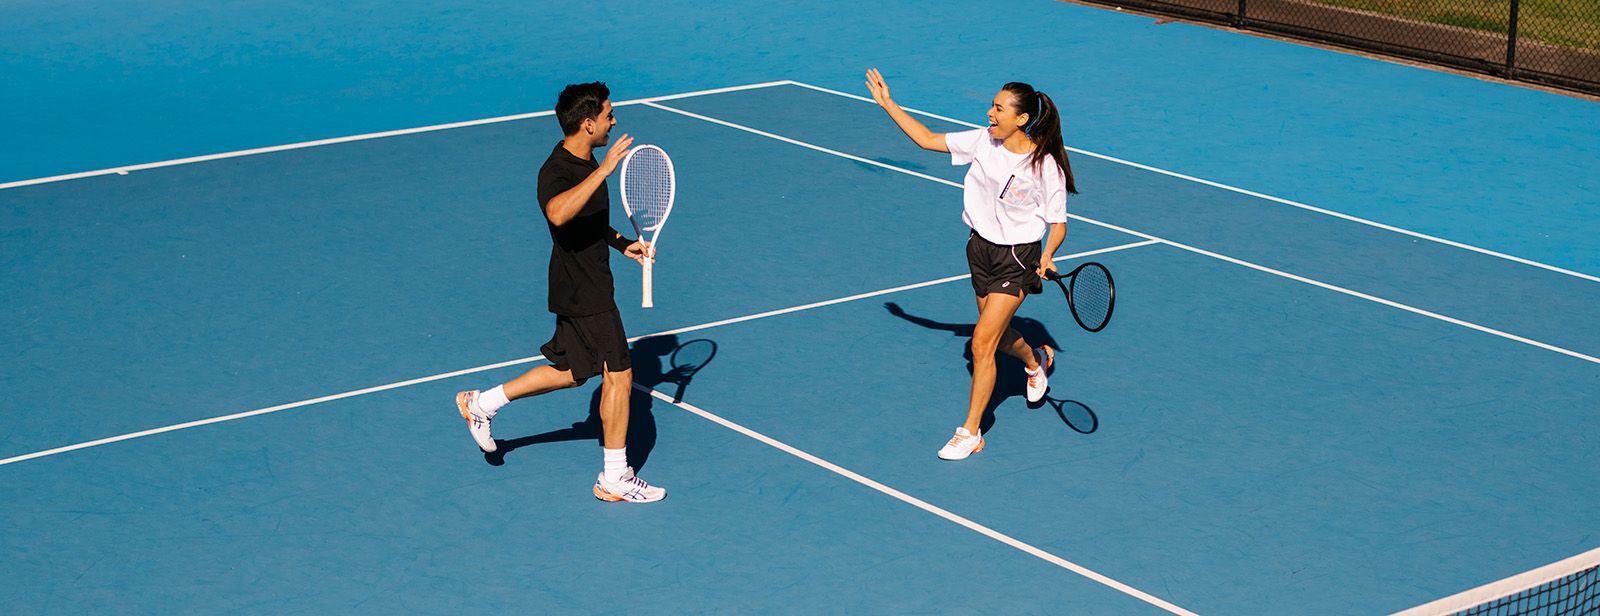 La moda en el tenis: qué ponerse para jugar al tenis | ASICS